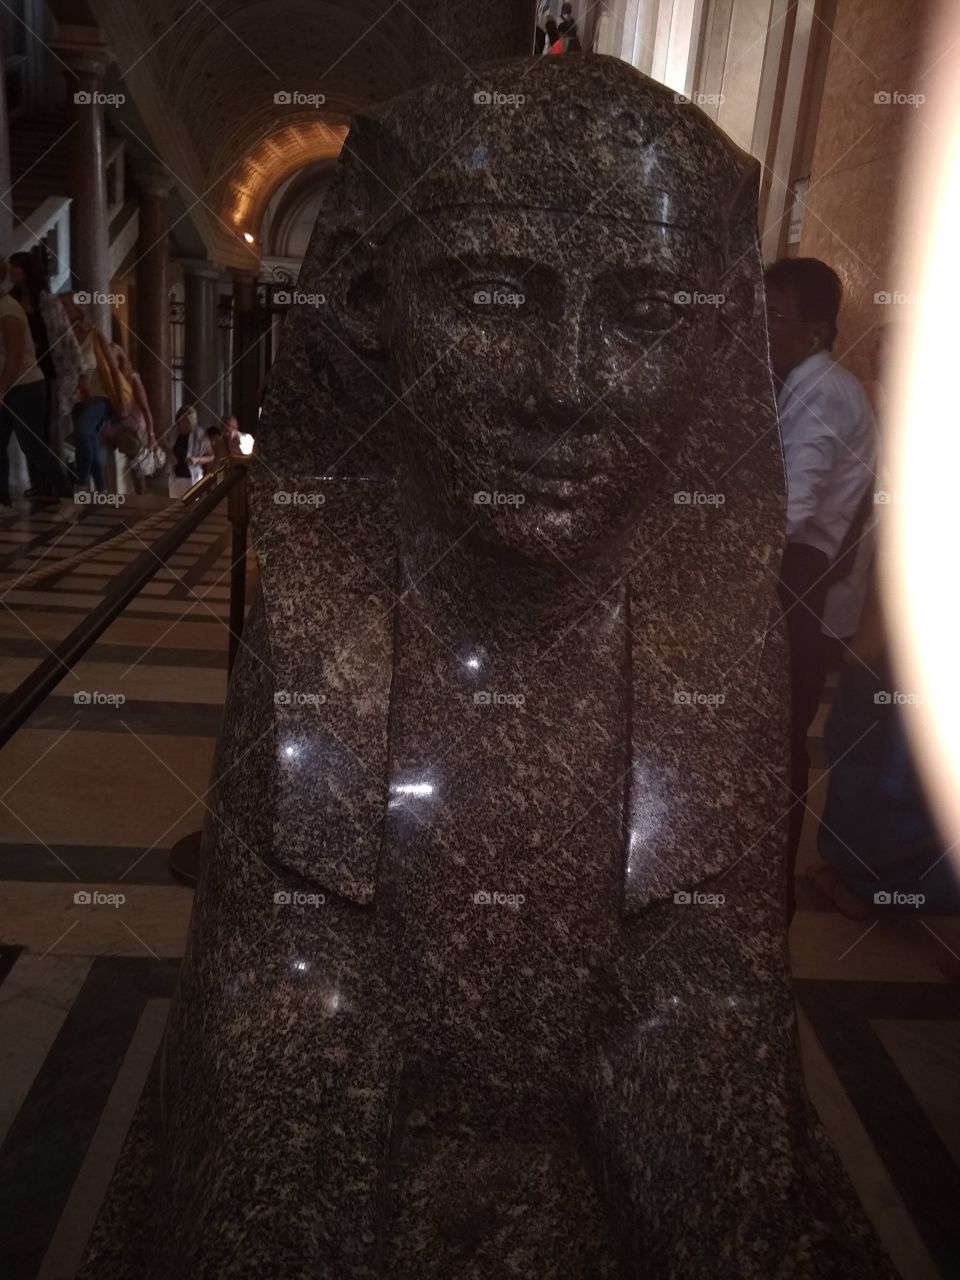 Egypt art